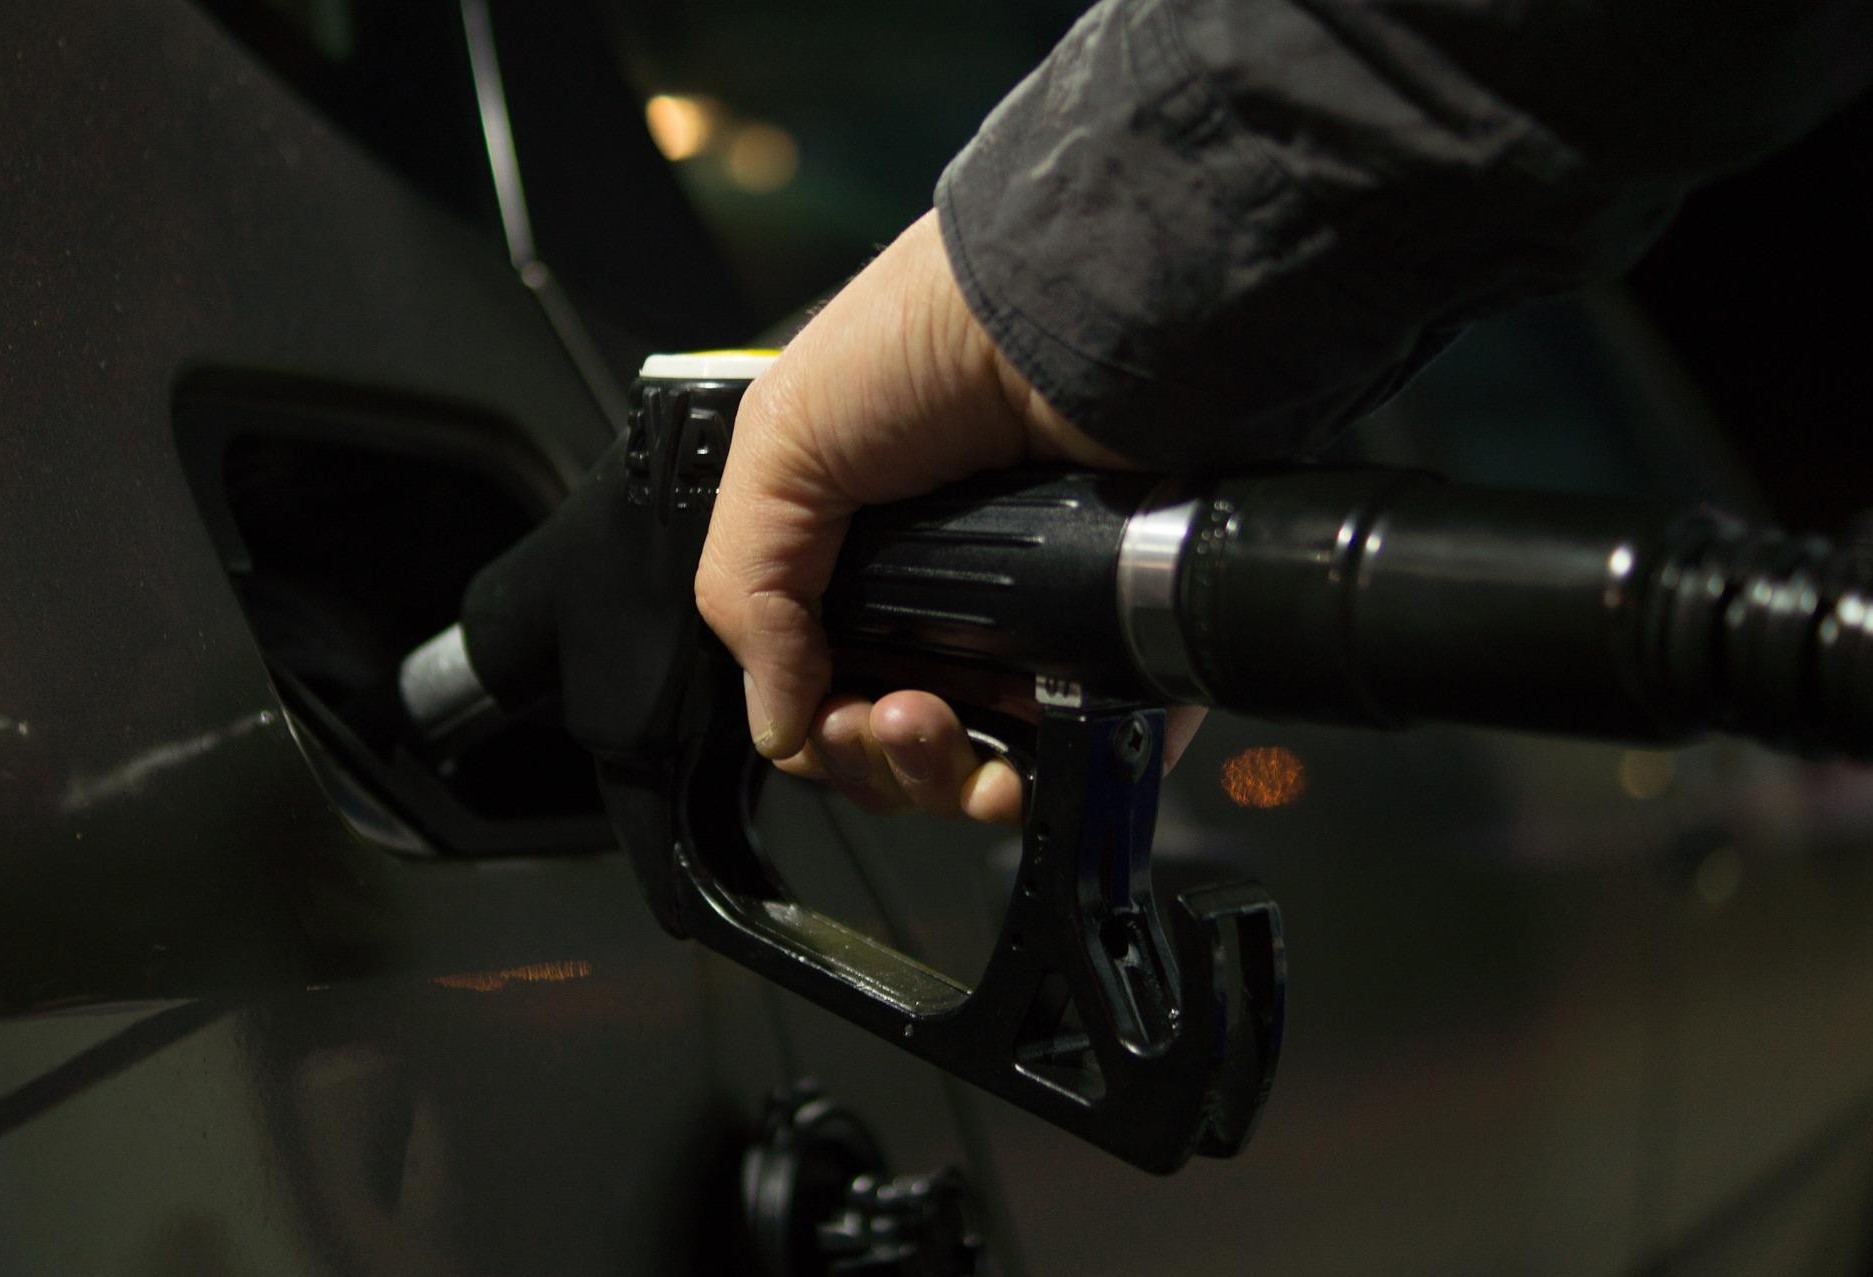 Postos  que não exibirem variação dos preços dos combustíveis poderão pagar multa